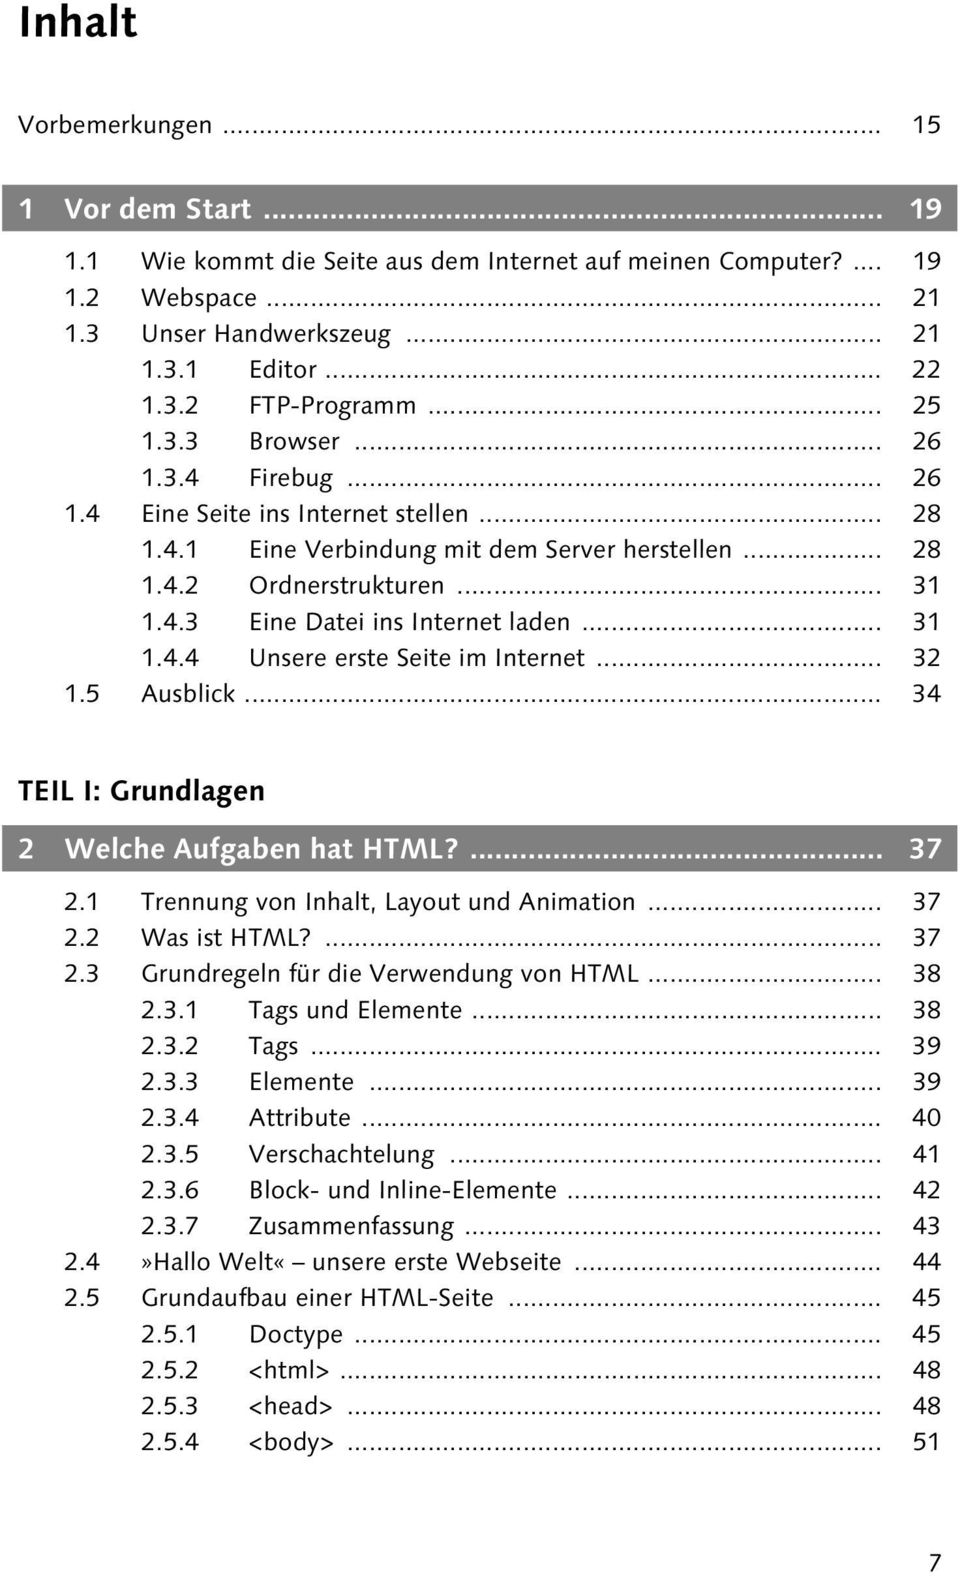 .. 31 1.4.4 Unsere erste Seite im Internet... 32 1.5 Ausblick... 34 TEIL I: Grundlagen 2 Welche Aufgaben hat HTML?... 37 2.1 Trennung von Inhalt, Layout und Animation... 37 2.2 Was ist HTML?... 37 2.3 Grundregeln für die Verwendung von HTML.